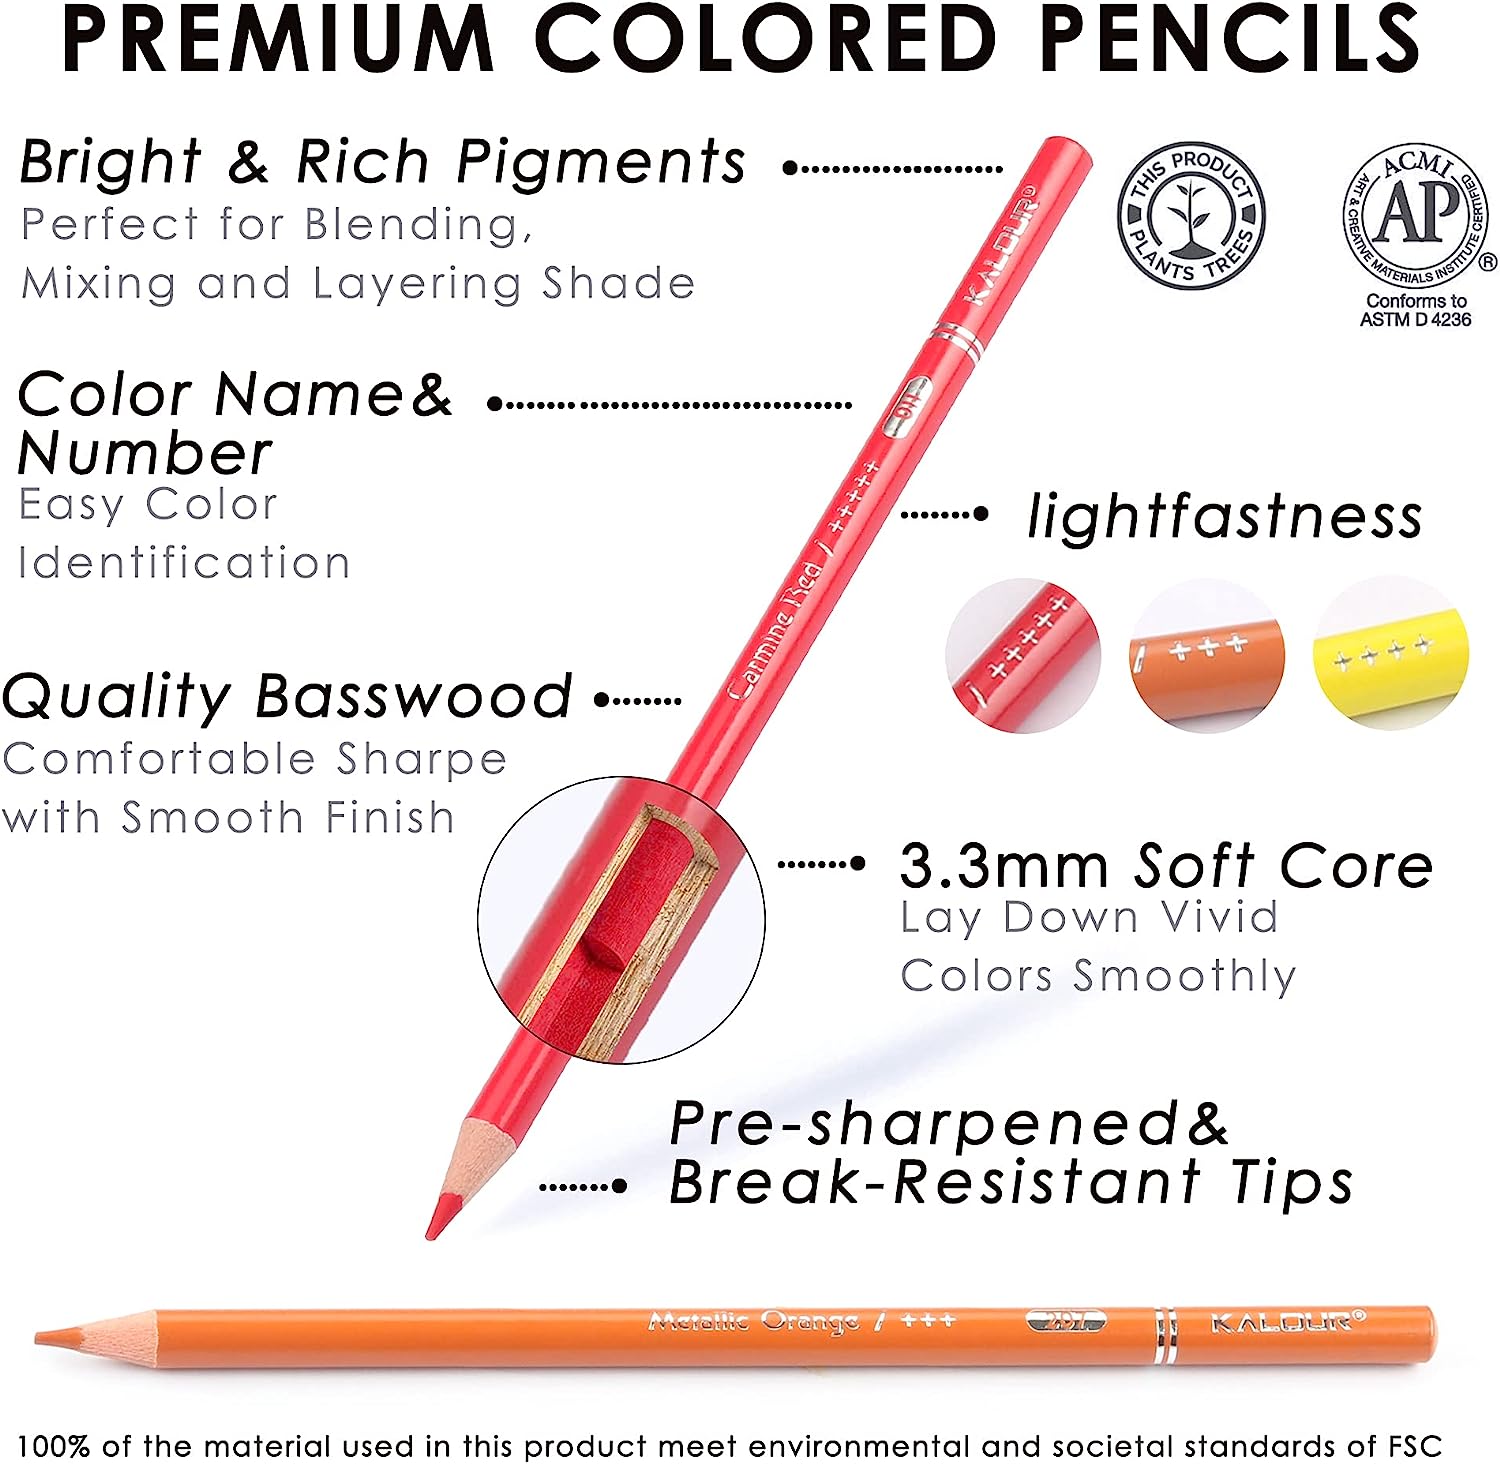 KALOUR 520 Colors Colored Pencils Set Artists Soft Core Vibrant